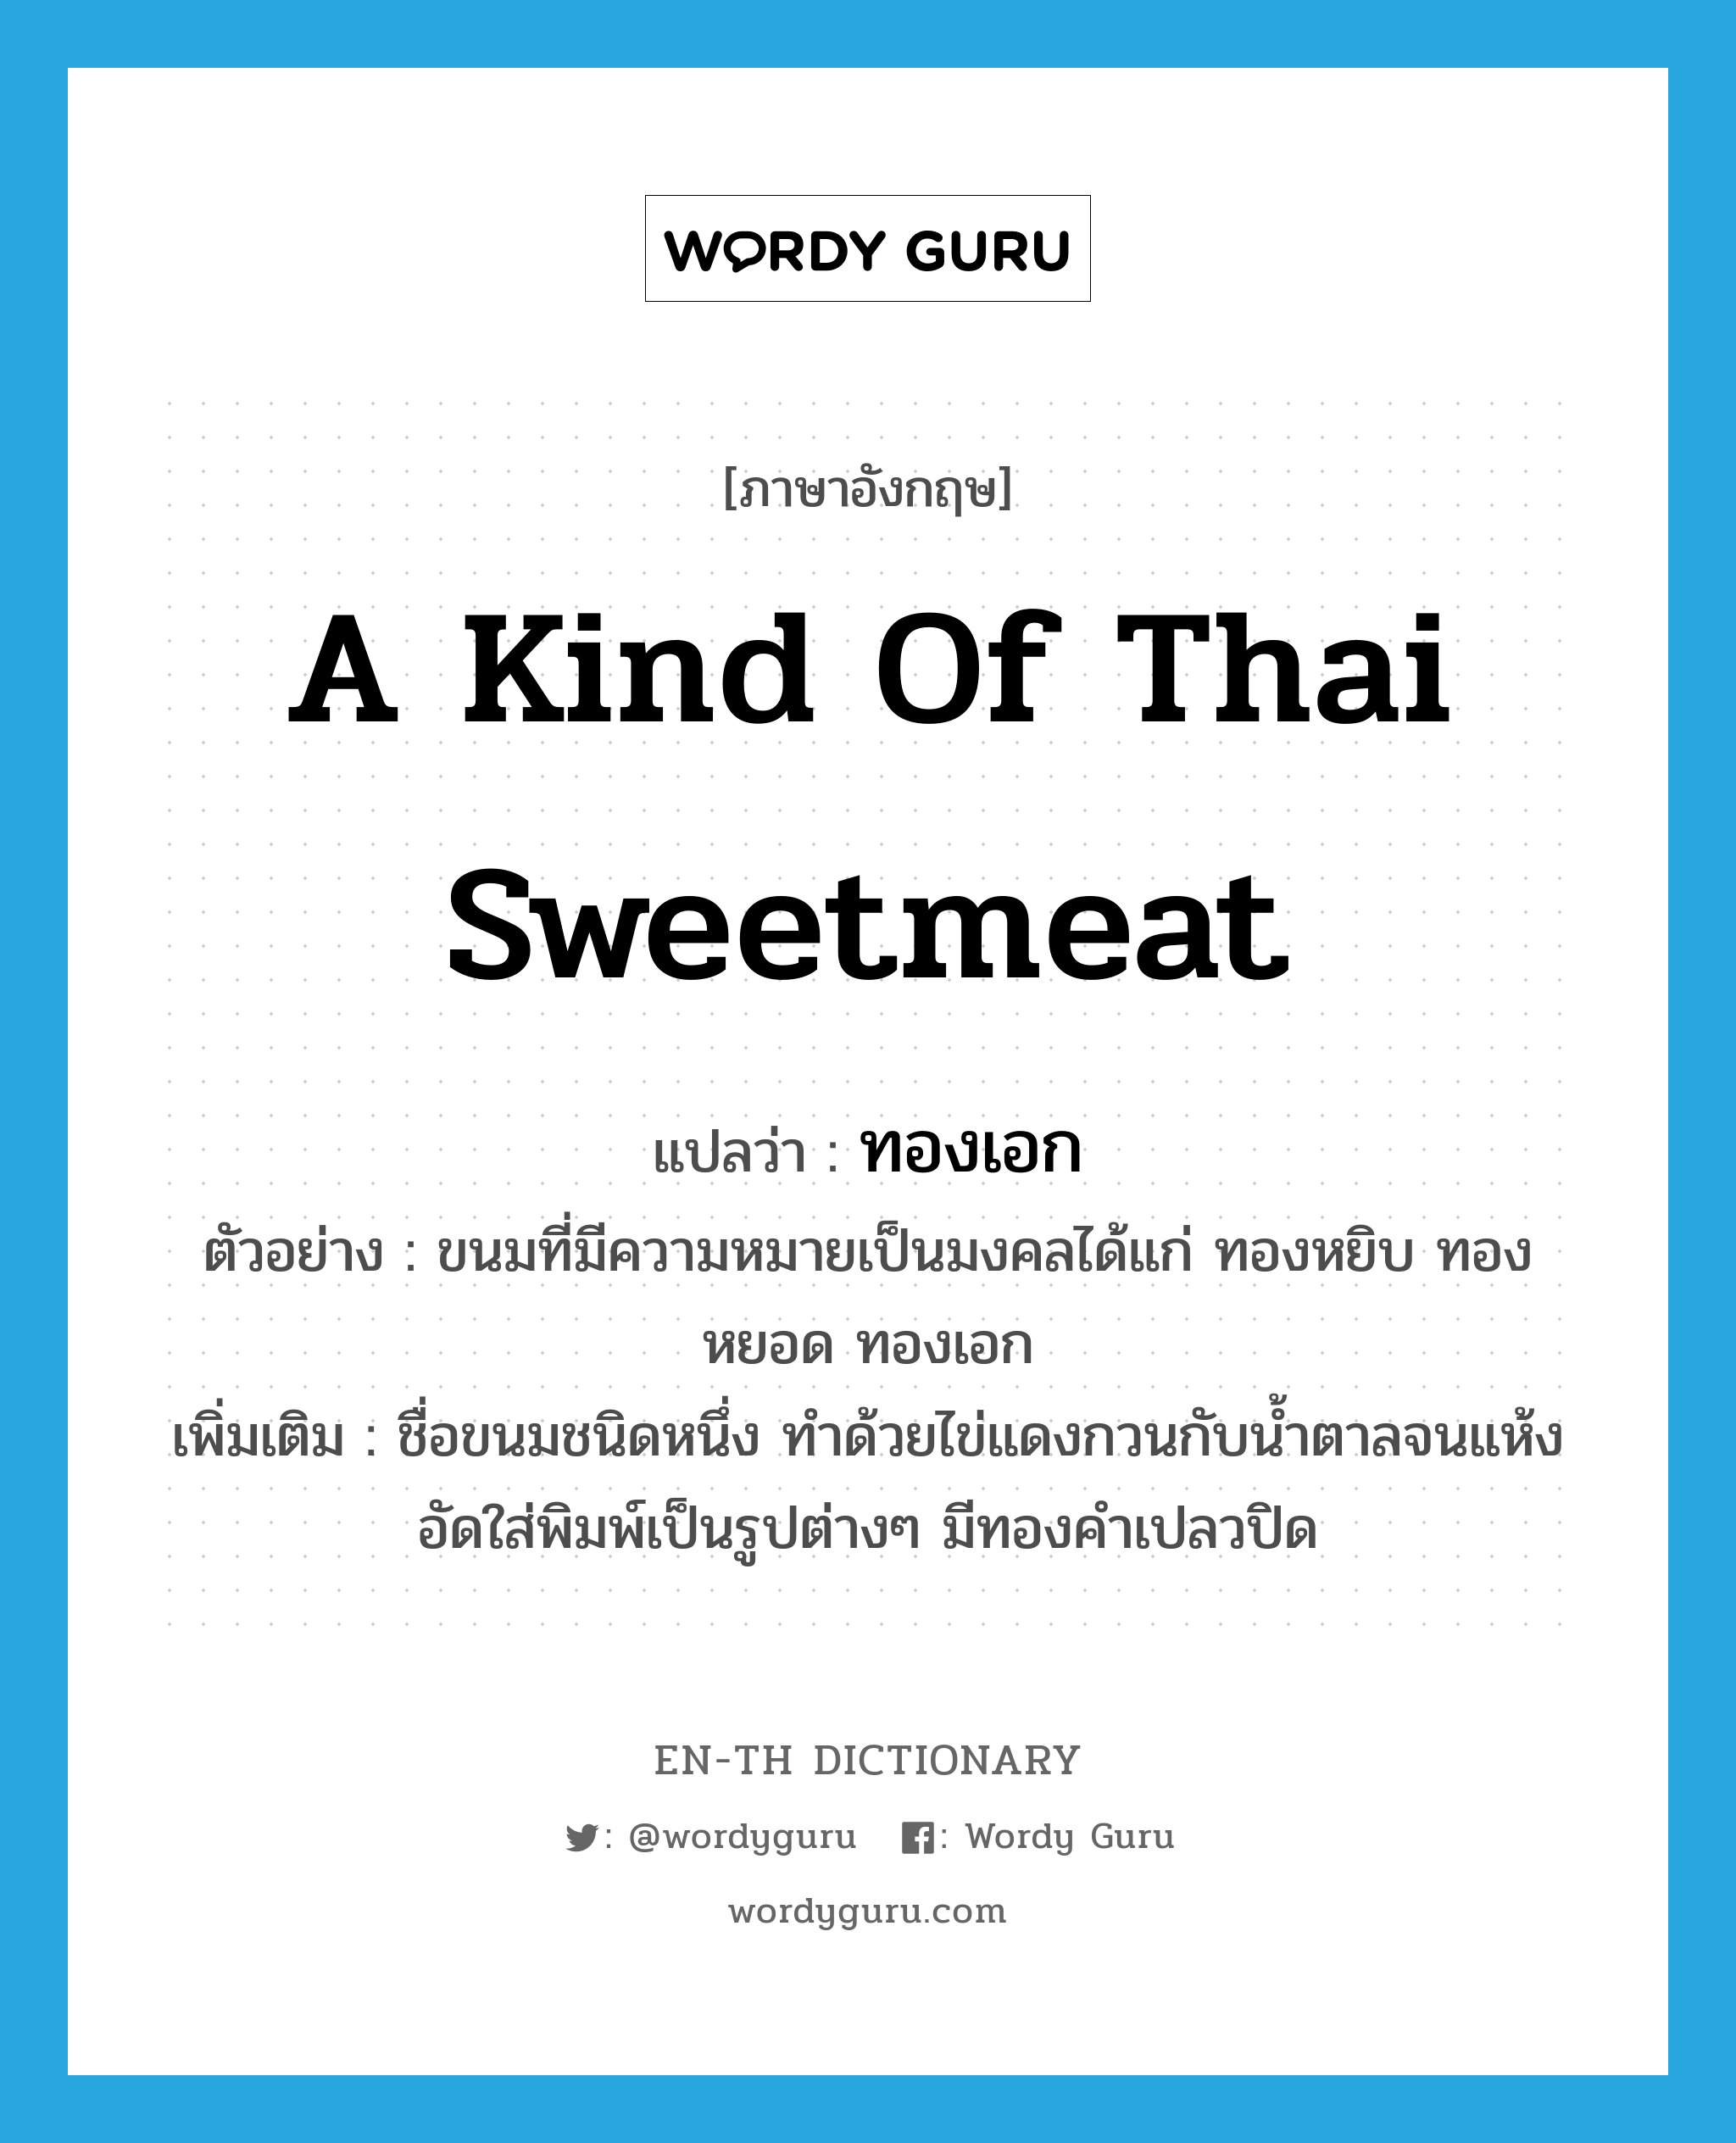 a kind of Thai sweetmeat แปลว่า? คำศัพท์ในกลุ่มประเภท N, คำศัพท์ภาษาอังกฤษ a kind of Thai sweetmeat แปลว่า ทองเอก ประเภท N ตัวอย่าง ขนมที่มีความหมายเป็นมงคลได้แก่ ทองหยิบ ทองหยอด ทองเอก เพิ่มเติม ชื่อขนมชนิดหนึ่ง ทำด้วยไข่แดงกวนกับน้ำตาลจนแห้ง อัดใส่พิมพ์เป็นรูปต่างๆ มีทองคำเปลวปิด หมวด N